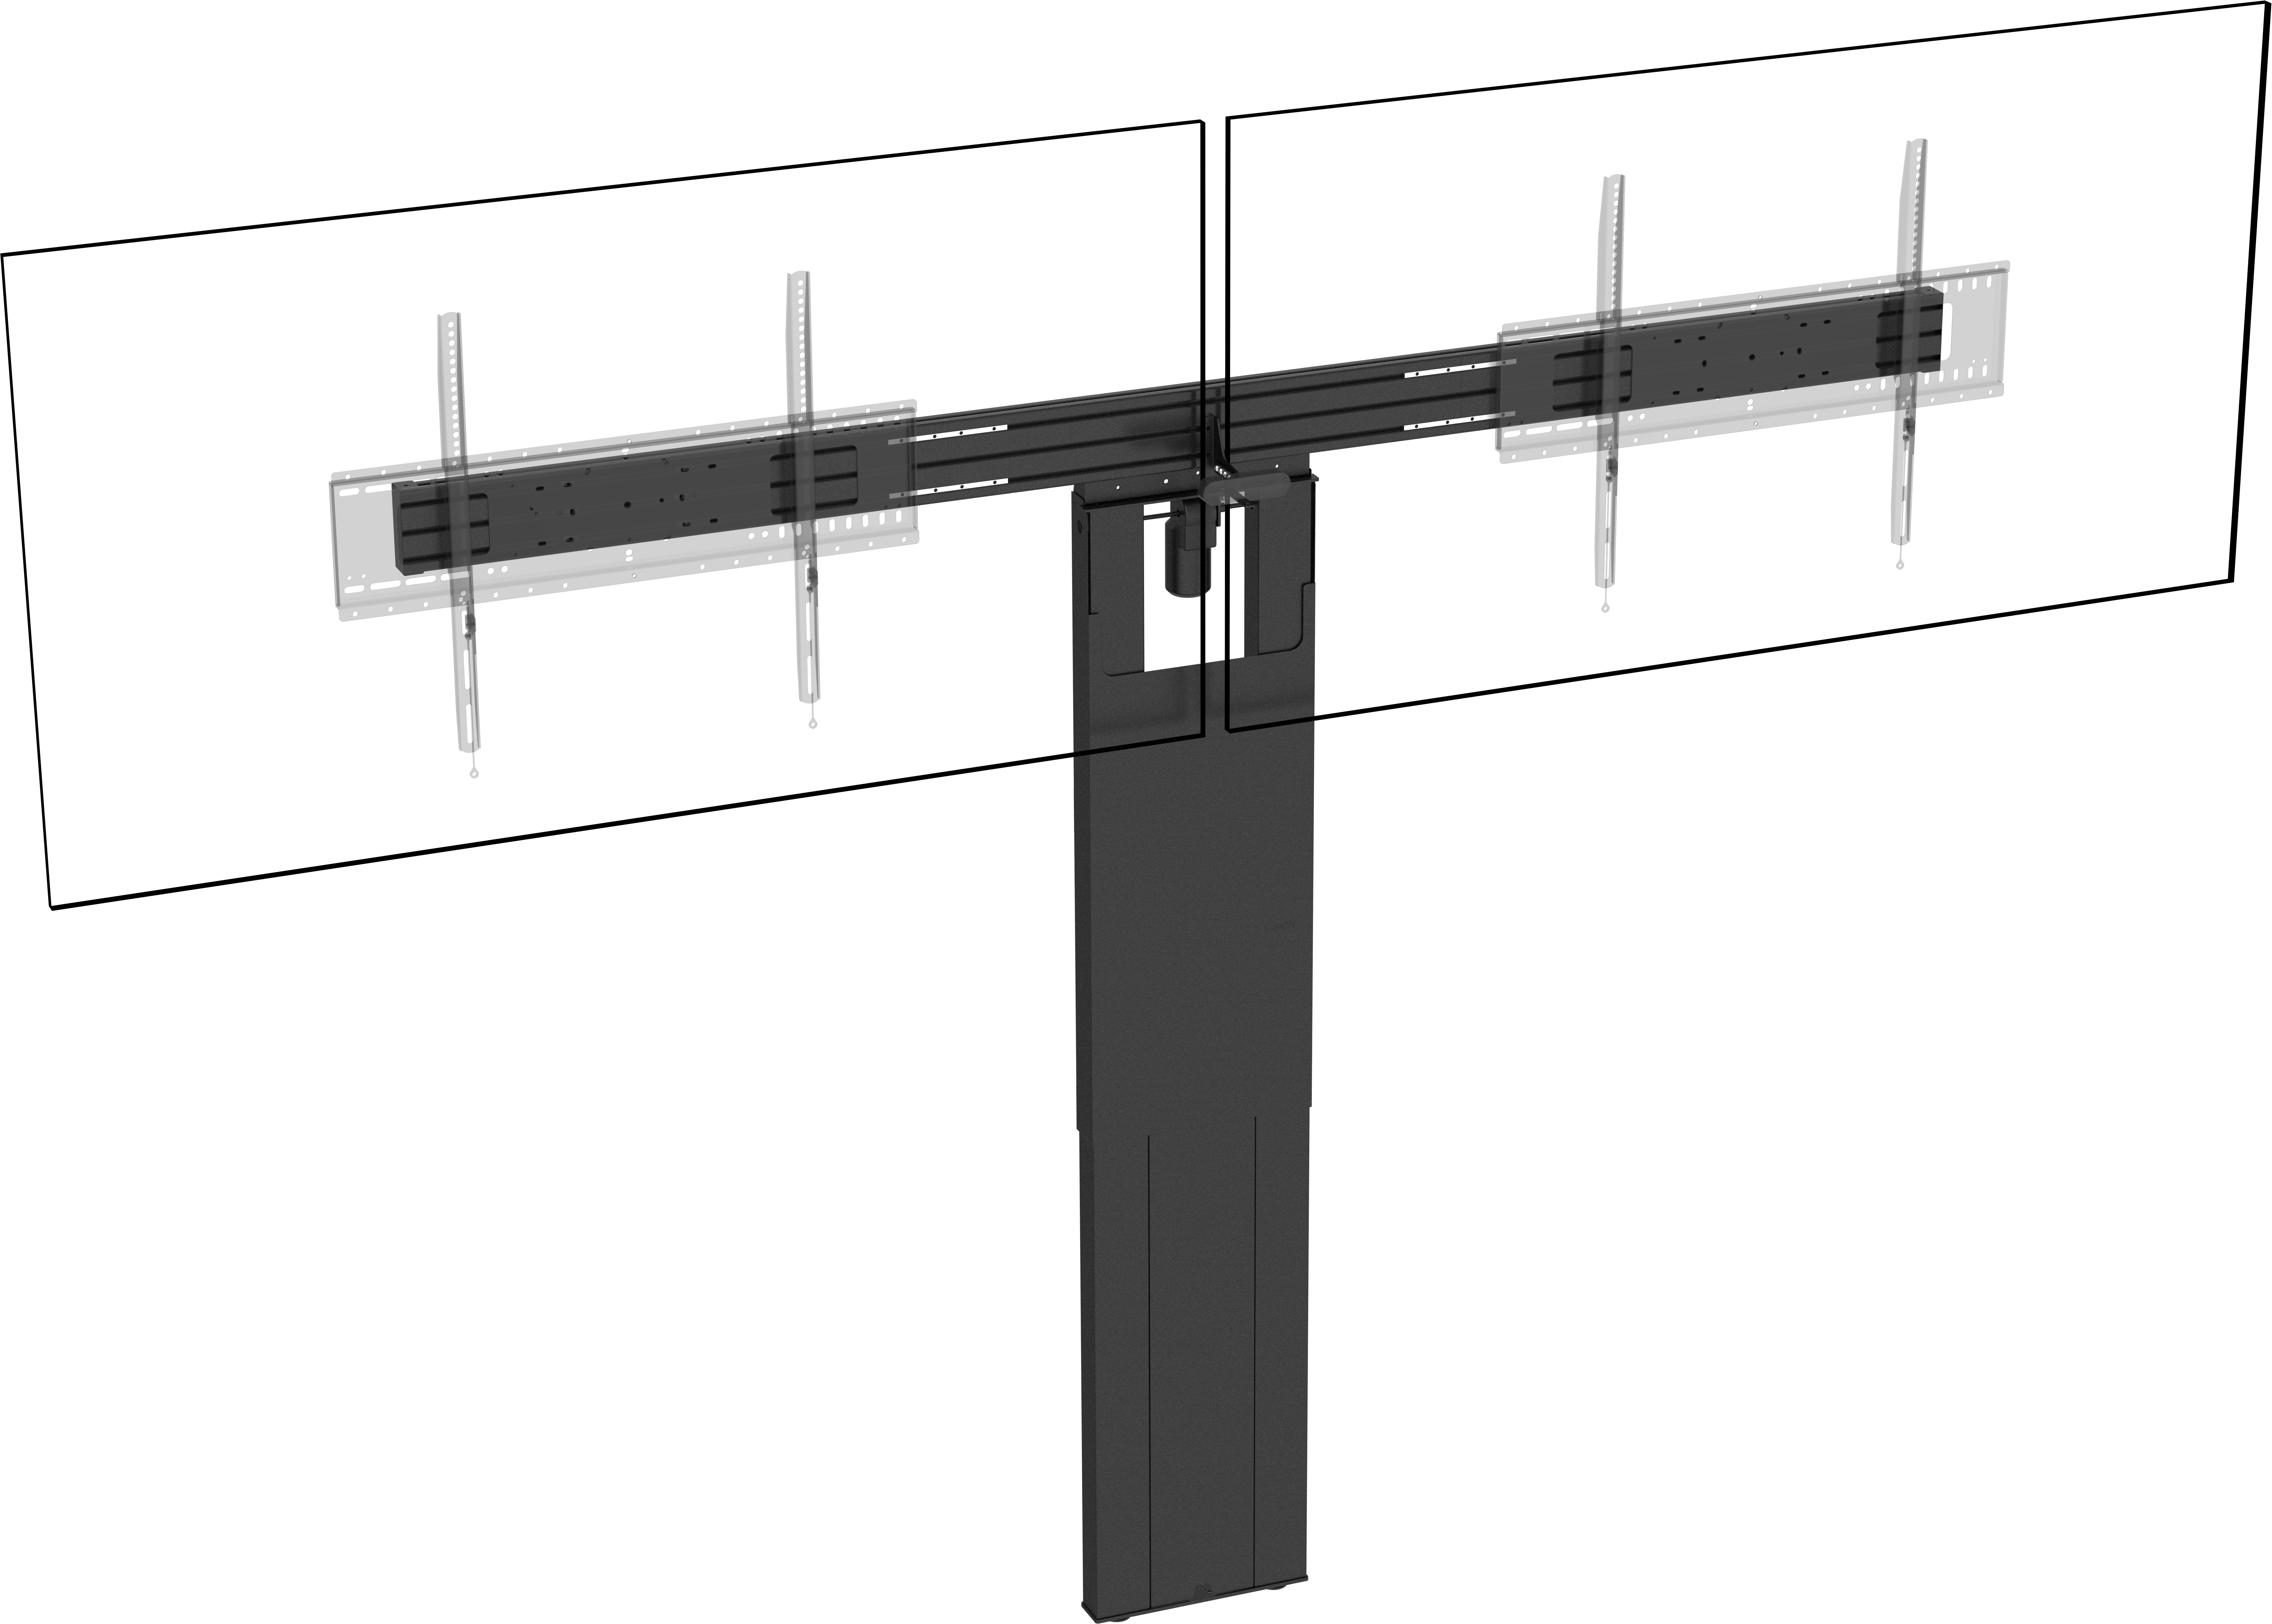 An image showing VFM-F50/DL Supporto a pavimento motorizzato per doppio pannello piatto